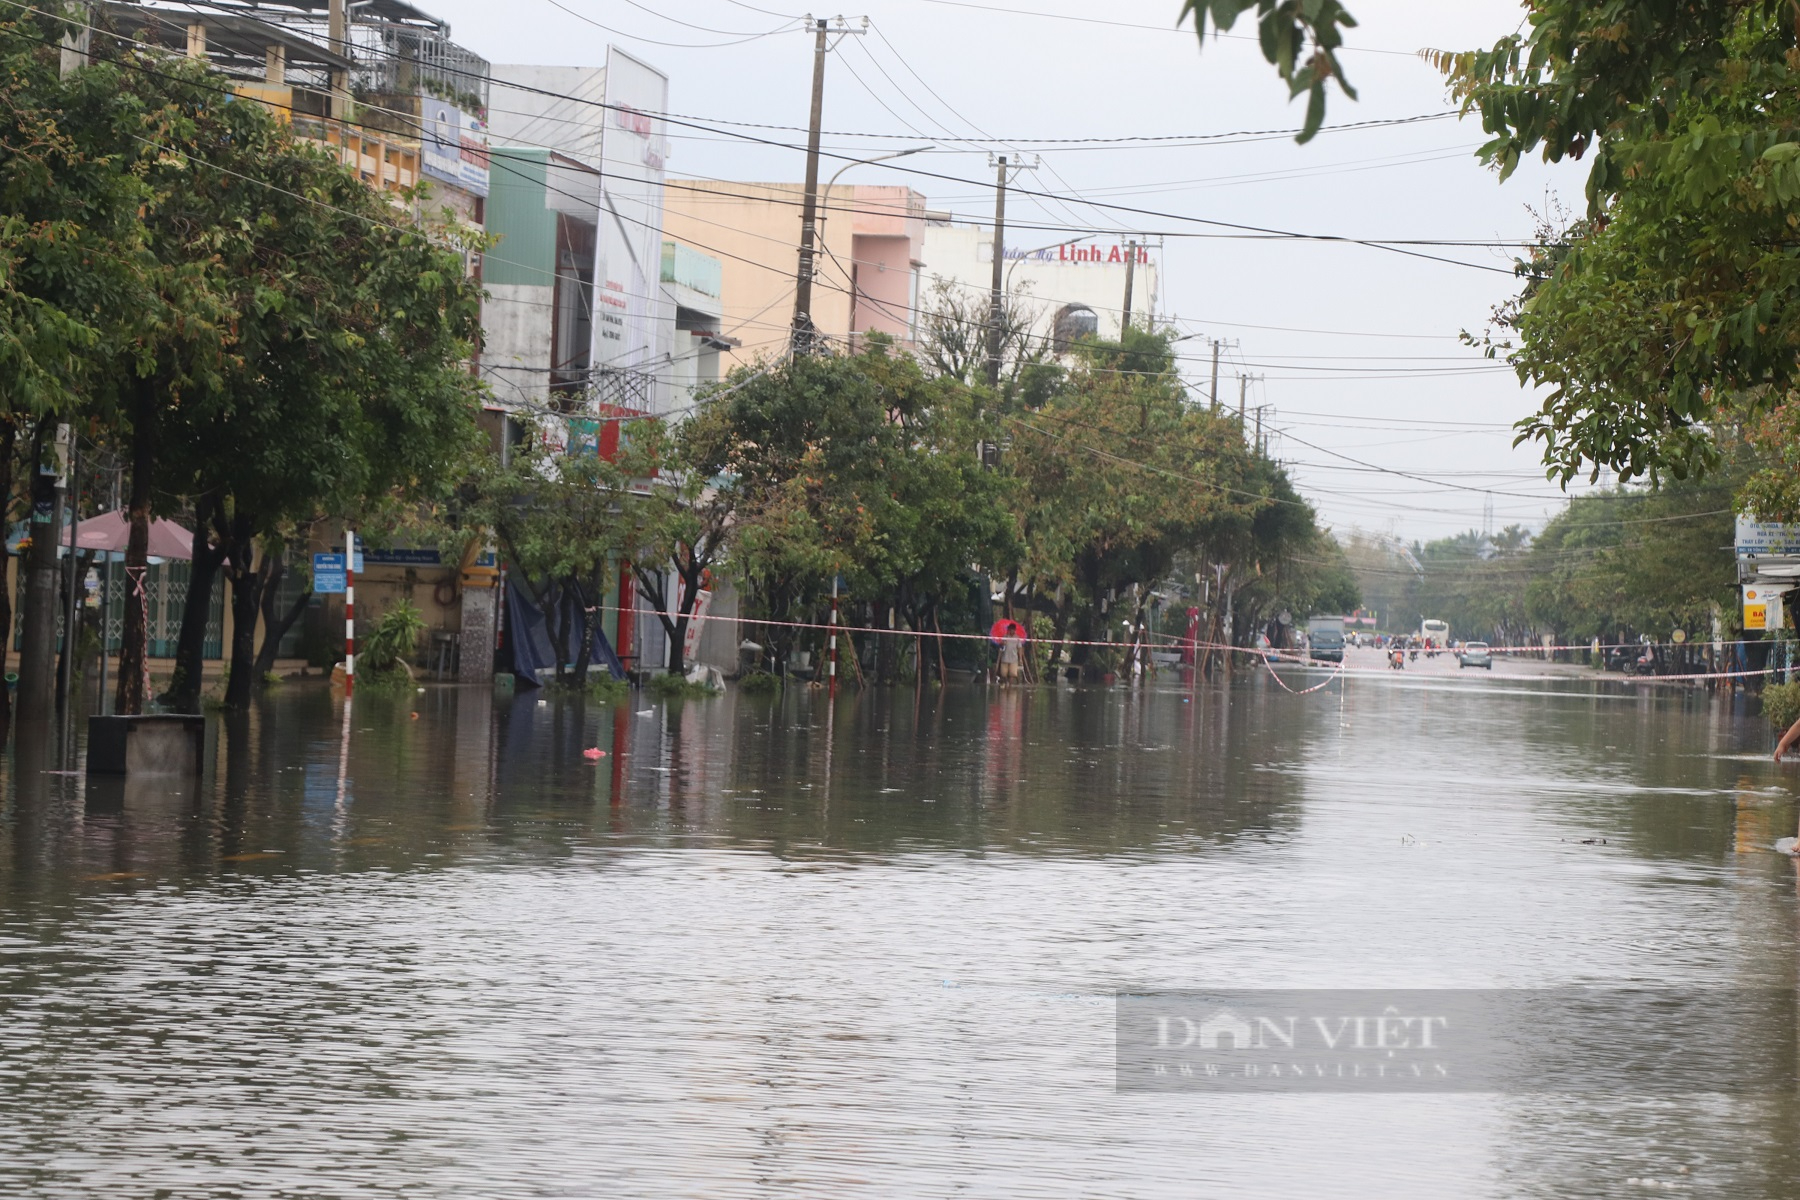 Quảng Nam: Người dân dùng ghe, thuyền di chuyển giữa phố mùa lũ lụt - Ảnh 6.